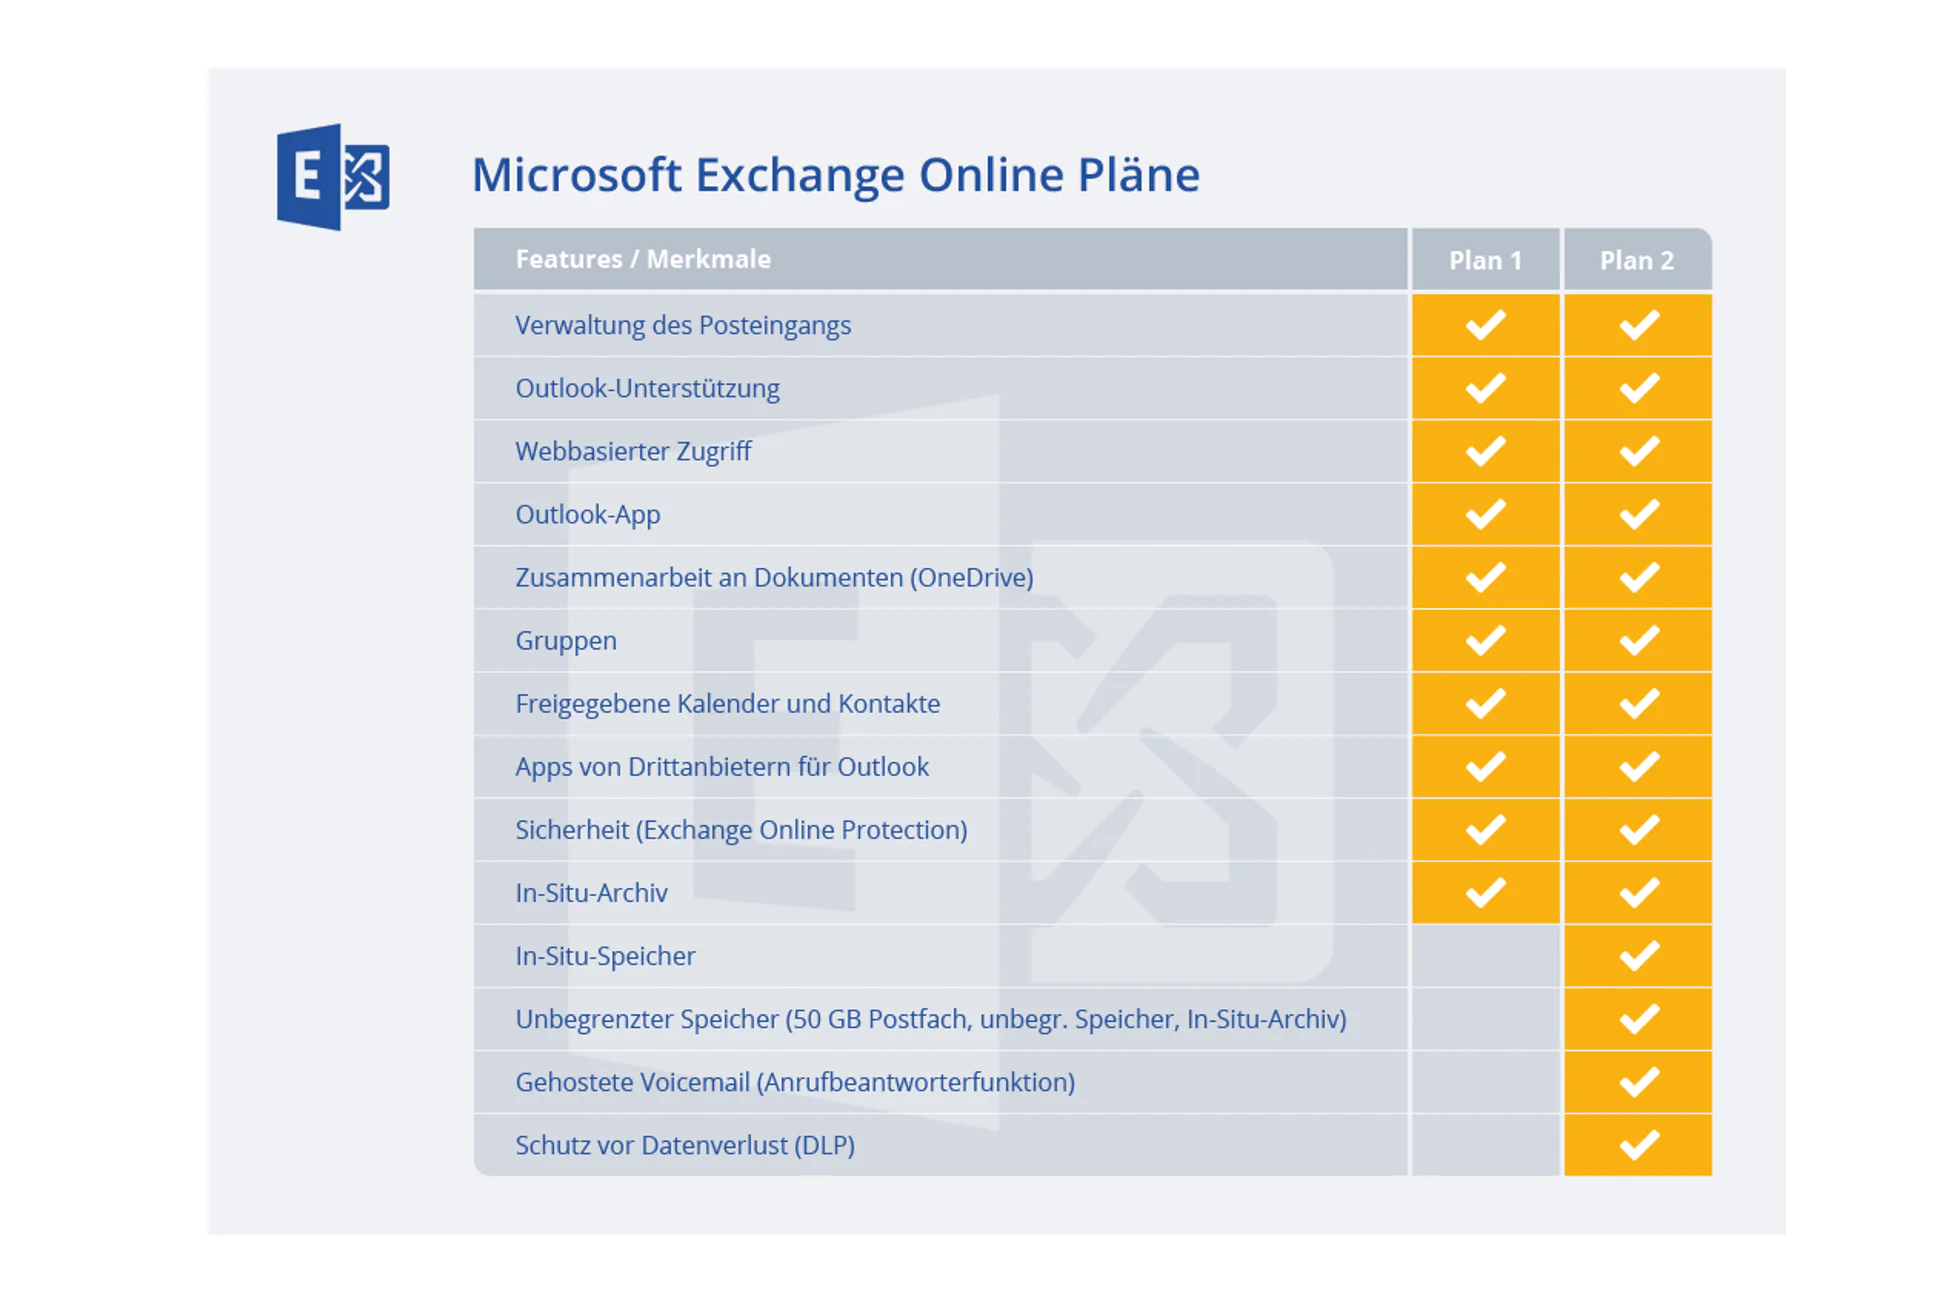 Tabellarischer Vergleich Microsoft Exchange Online Pläne - Plan 1 mit Plan 2